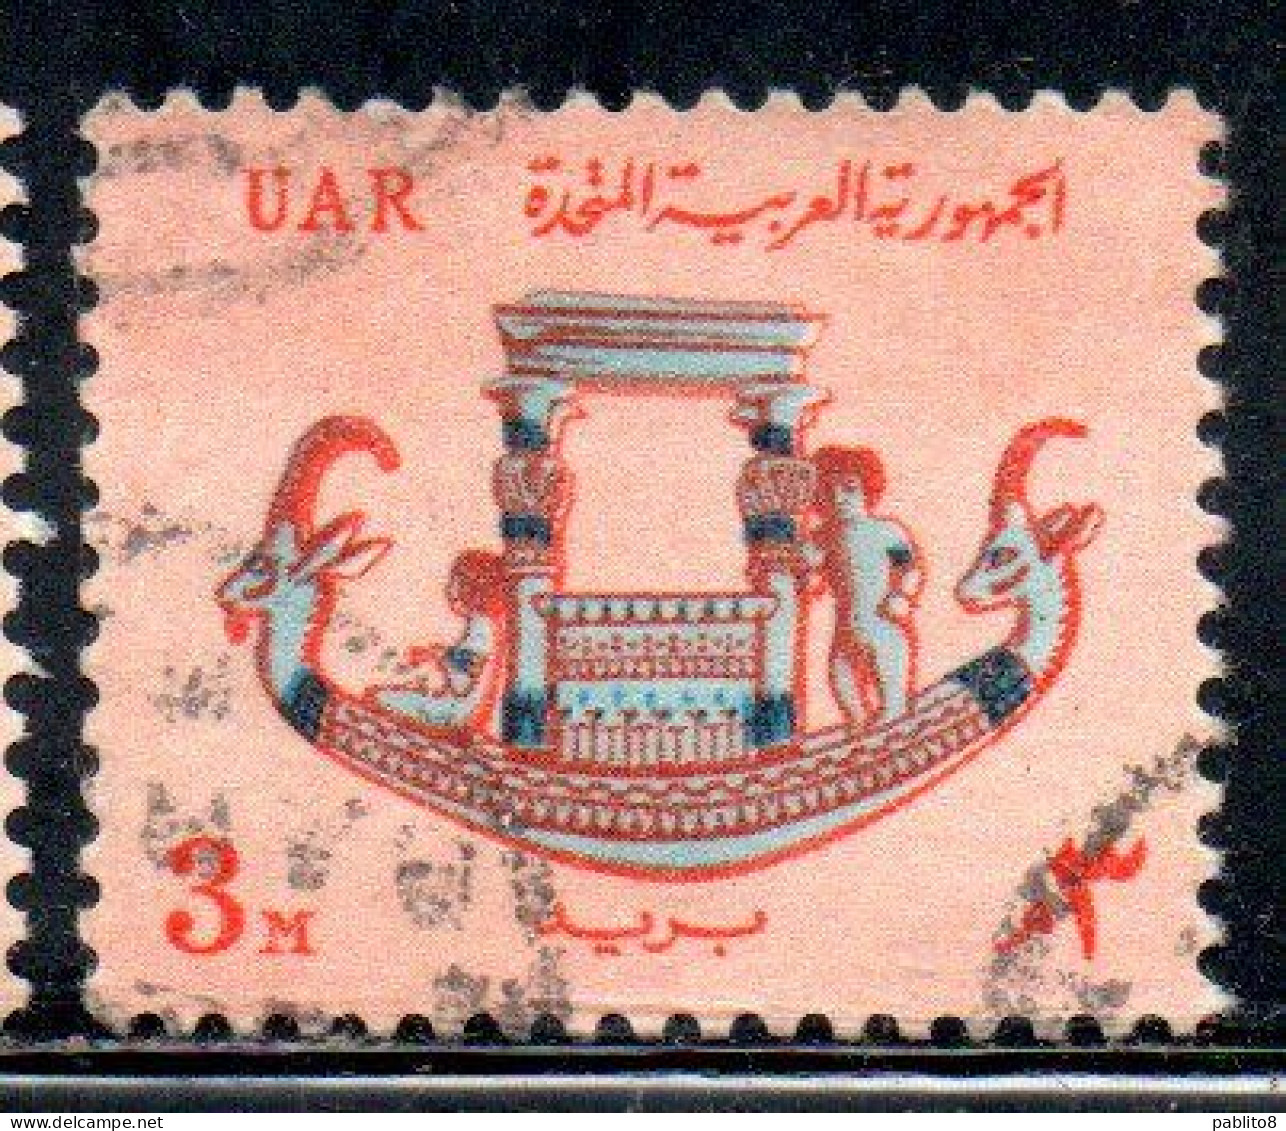 UAR EGYPT EGITTO 1964 1967 PHARAONIC CALCITE BOAT 3m USED USATO OBLITERE' - Usati